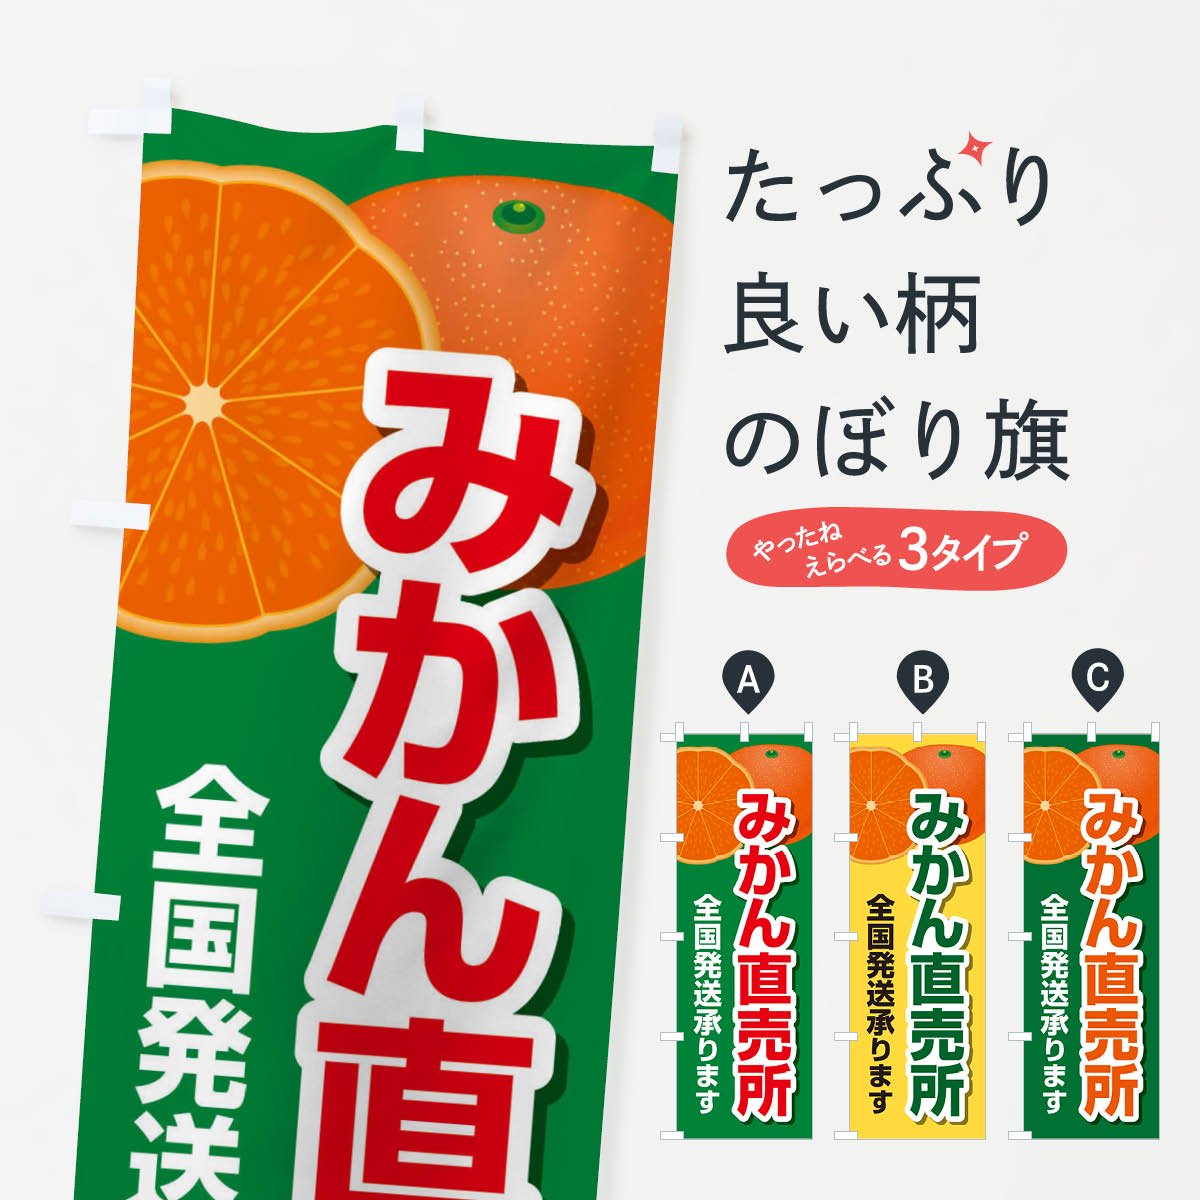 のぼり旗 3枚セット たんかん 直売所 橙 JA-224 - 店舗用品